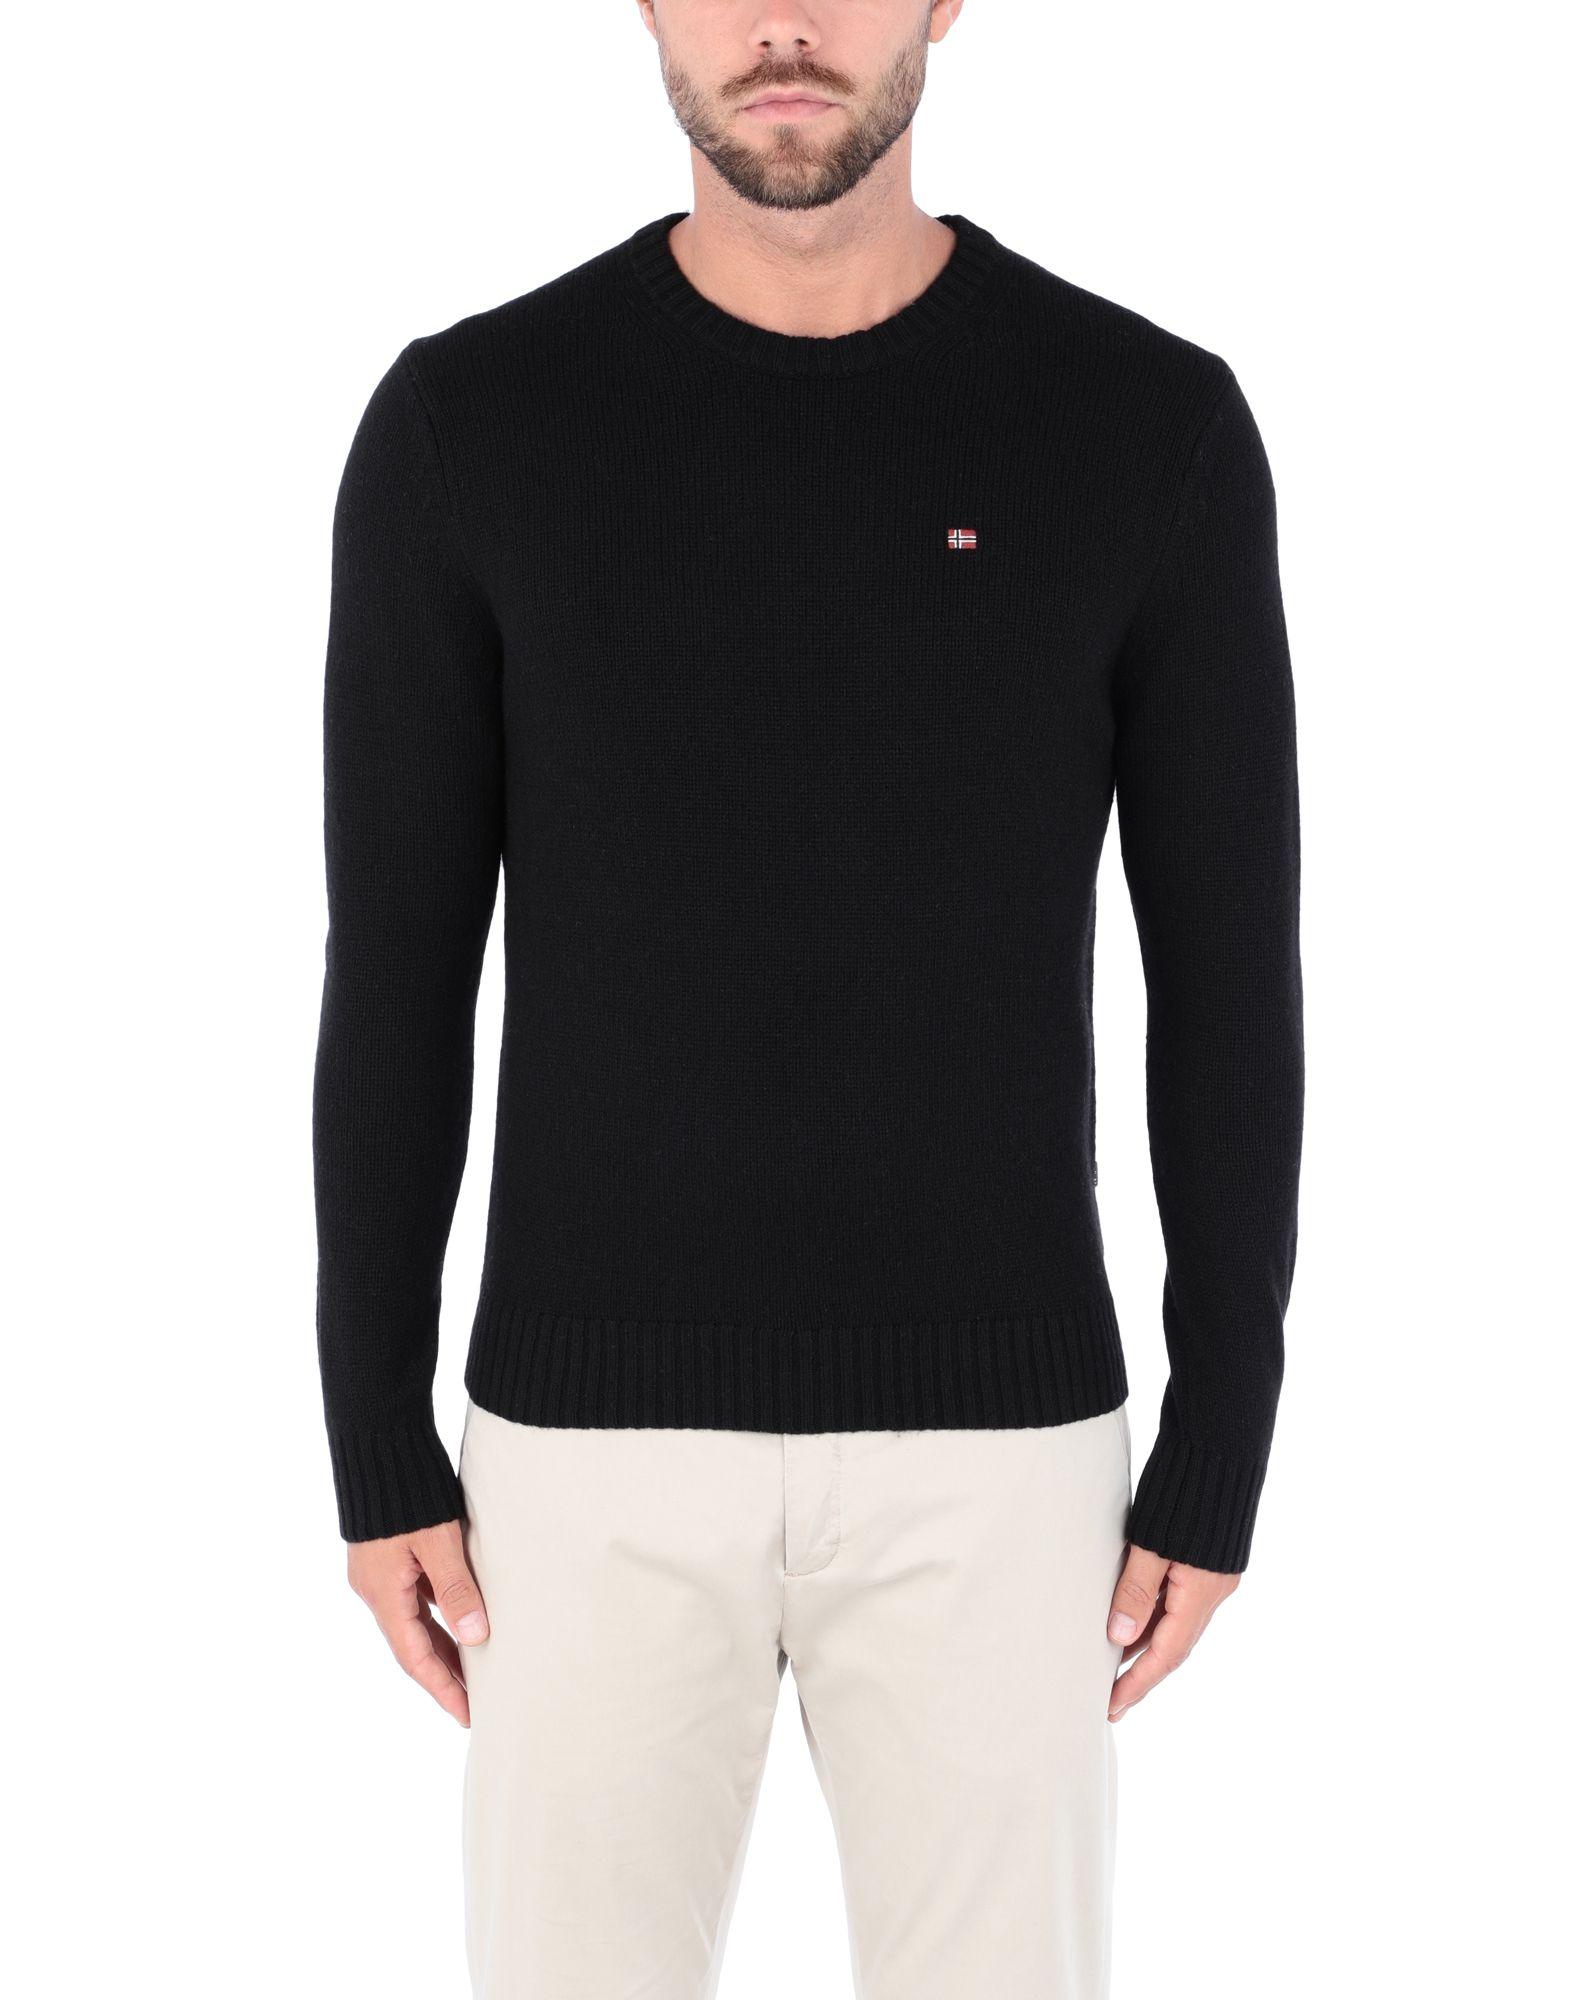 Napapijri Sweater in Black for Men - Lyst